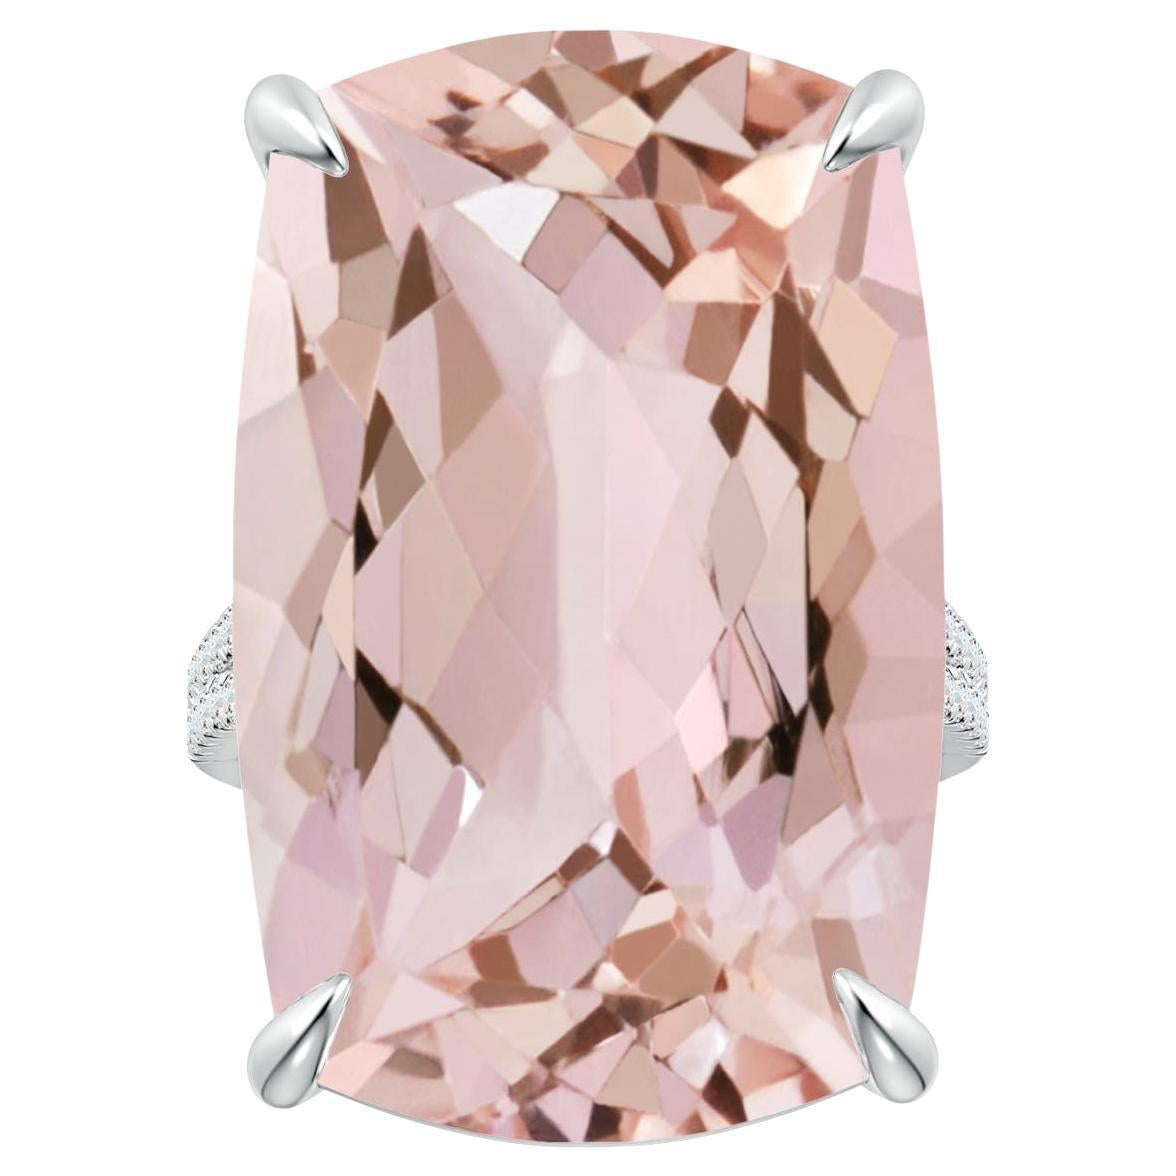 Angara Bague en platine avec diamants et morganite taille coussin certifiée GIA